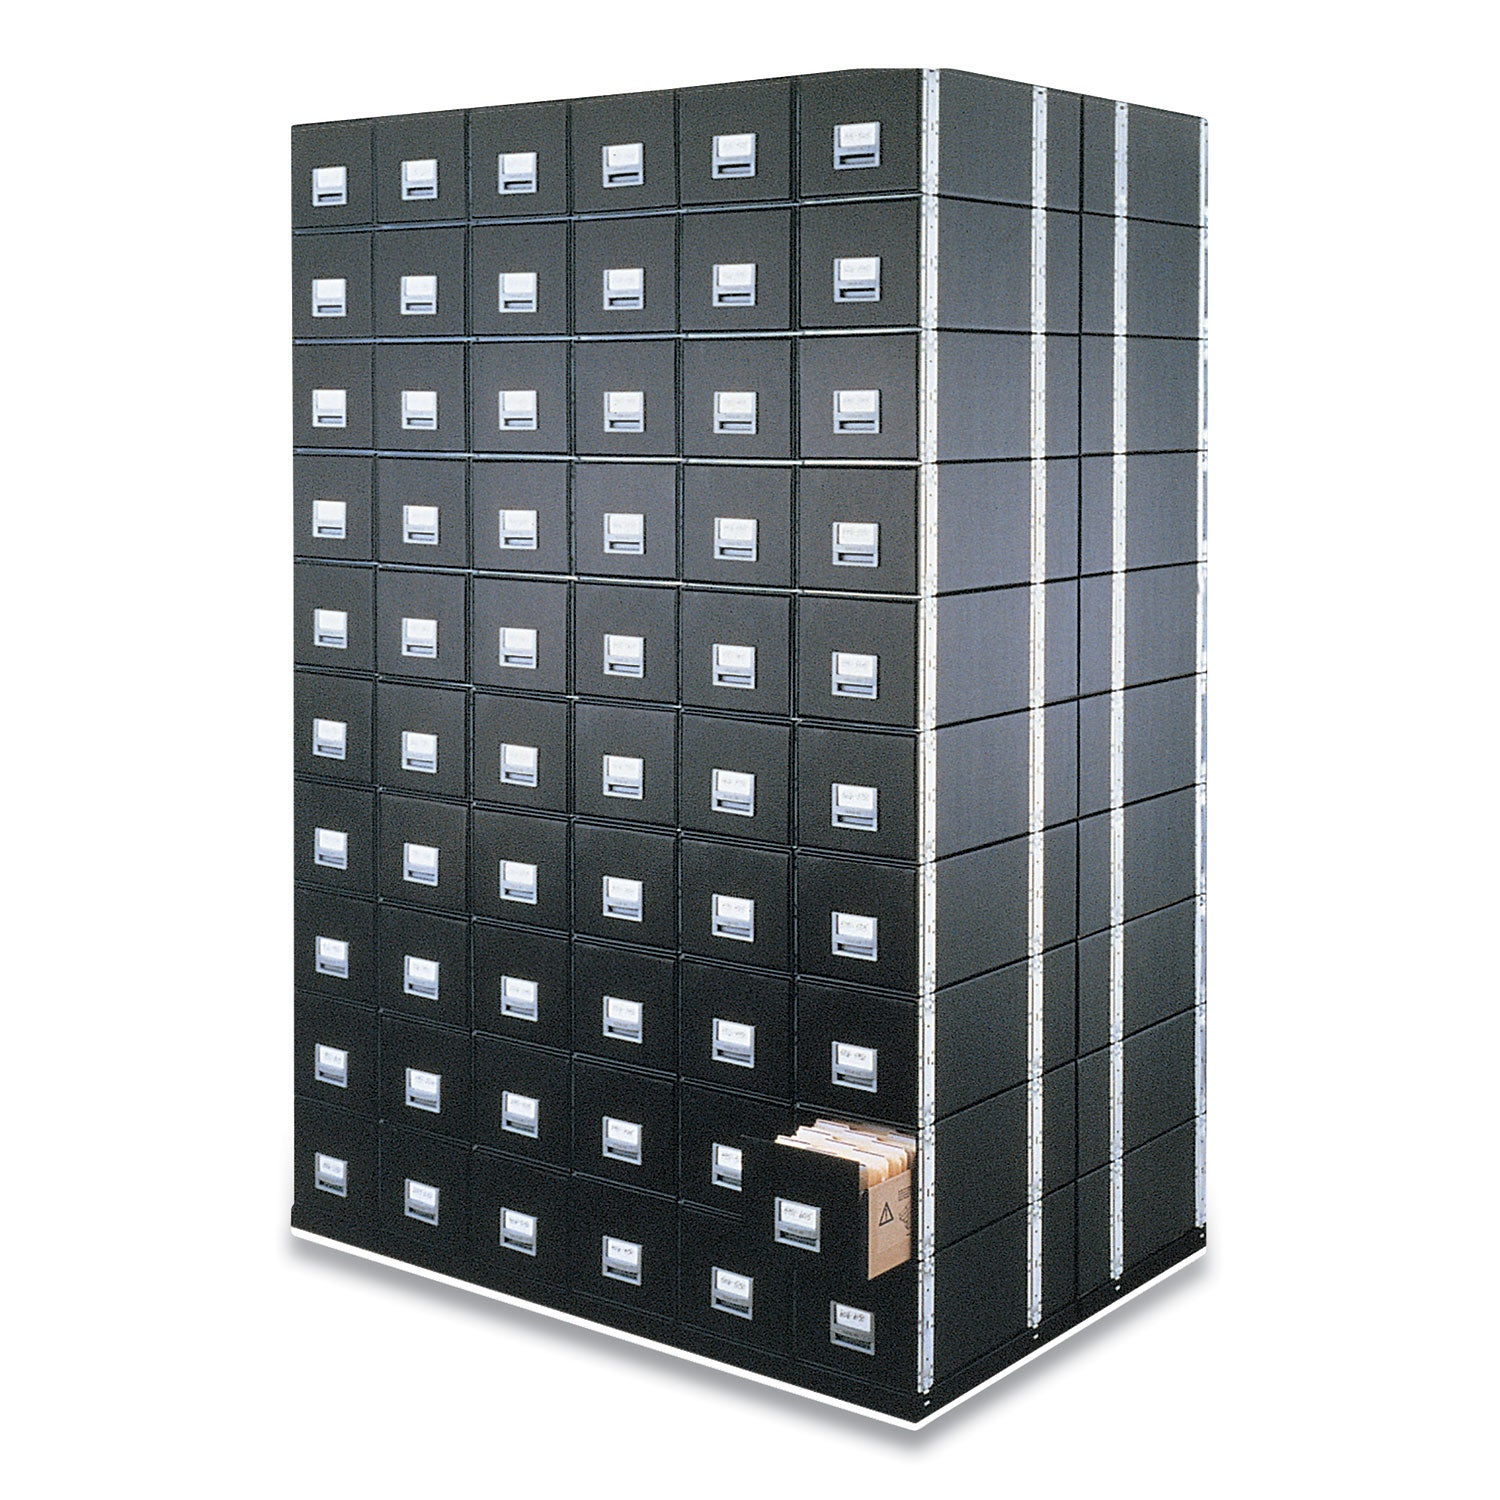 STAXONSTEEL Maximum Space-Saving Storage Drawers, Legal Files, 17" x 25.5" x 11.13", Black, 6/Carton - 